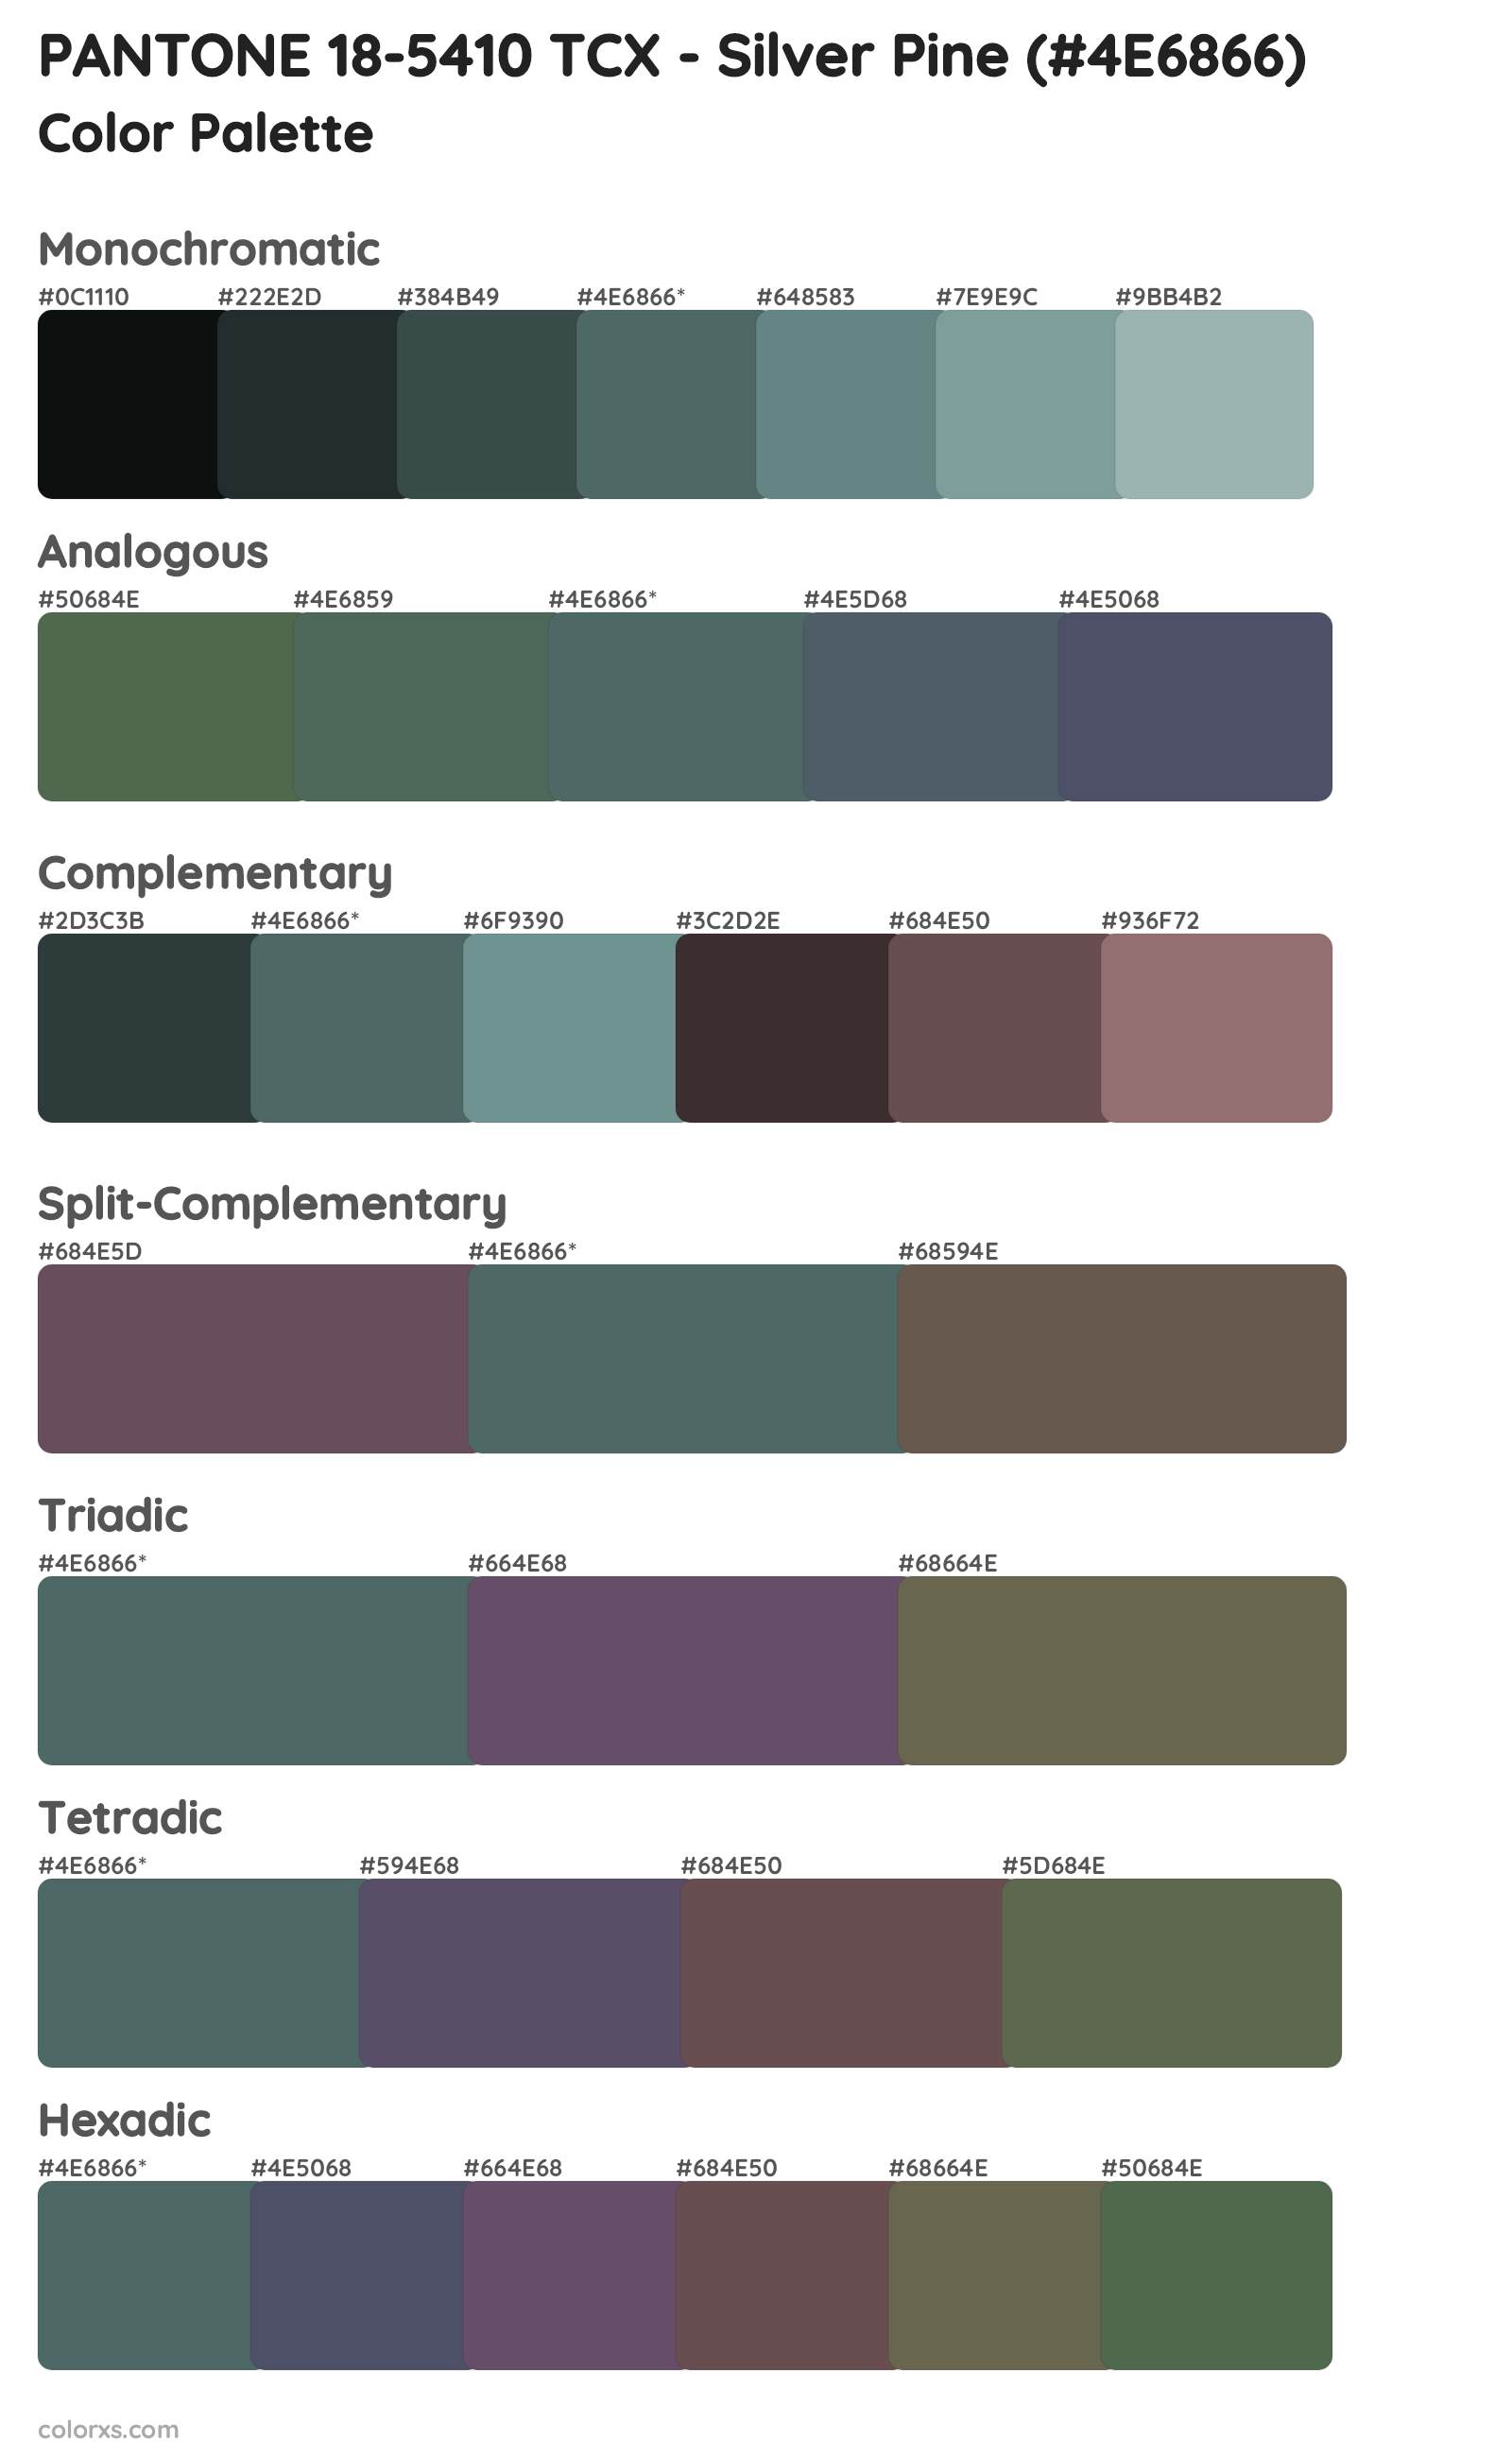 PANTONE 18-5410 TCX - Silver Pine Color Scheme Palettes